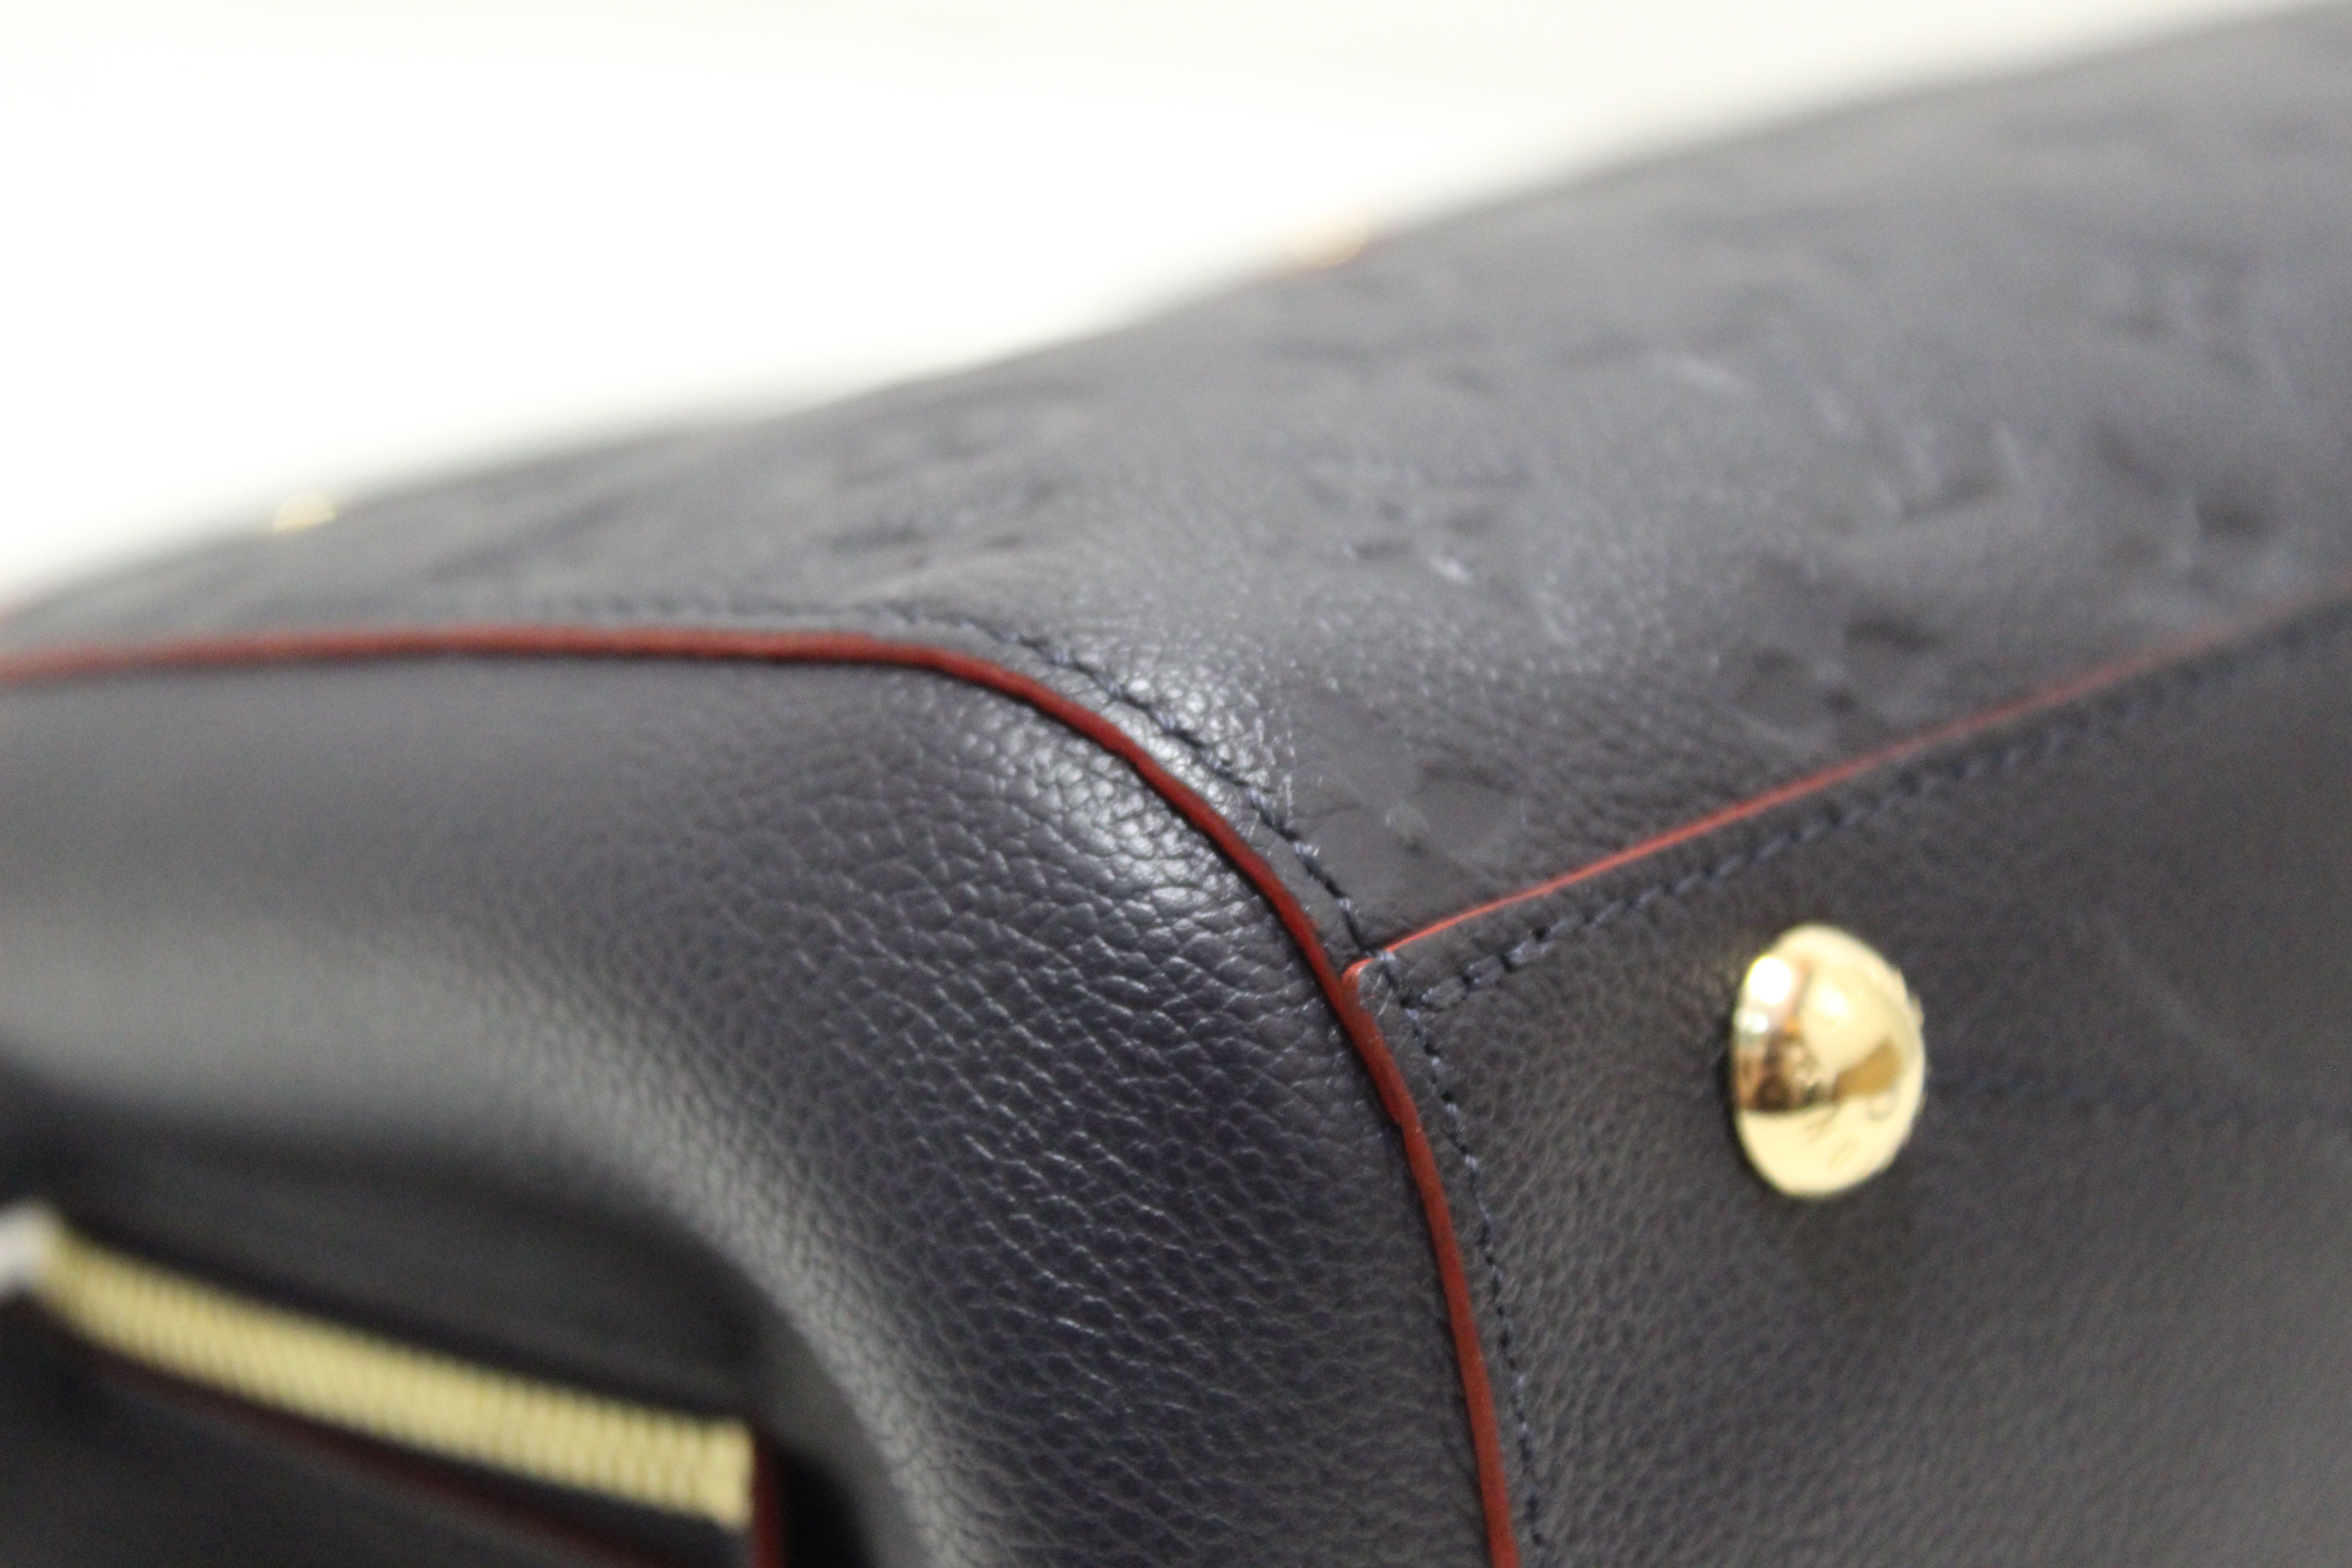 Louis Vuitton Montaigne Handbag Monogram Empreinte Leather MM - ShopStyle  Satchels & Top Handle Bags